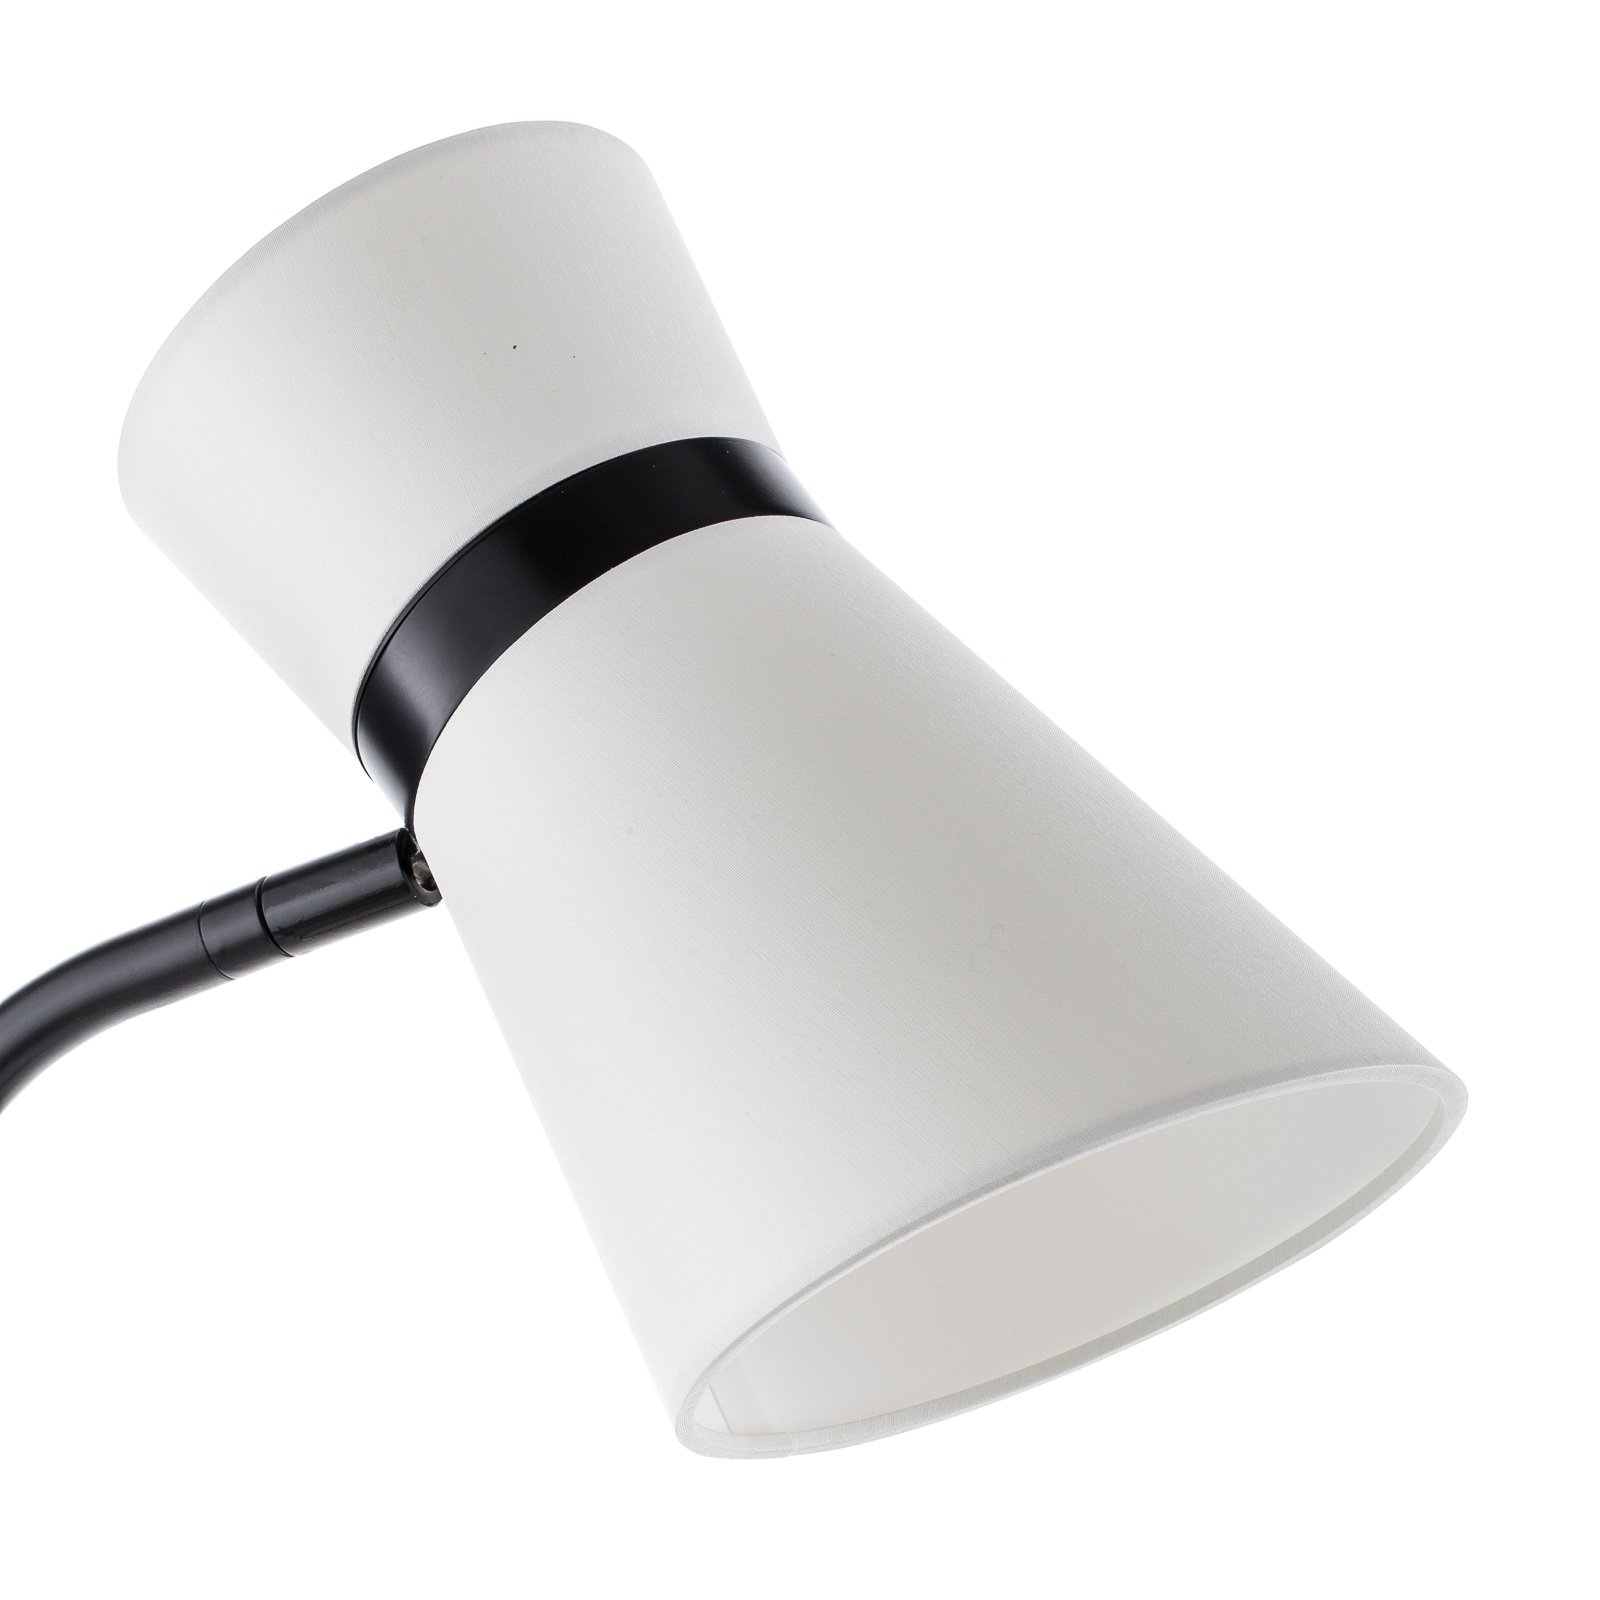 Baulmann 23.326.69-4204 podna svjetiljka u crno-bijeloj boji